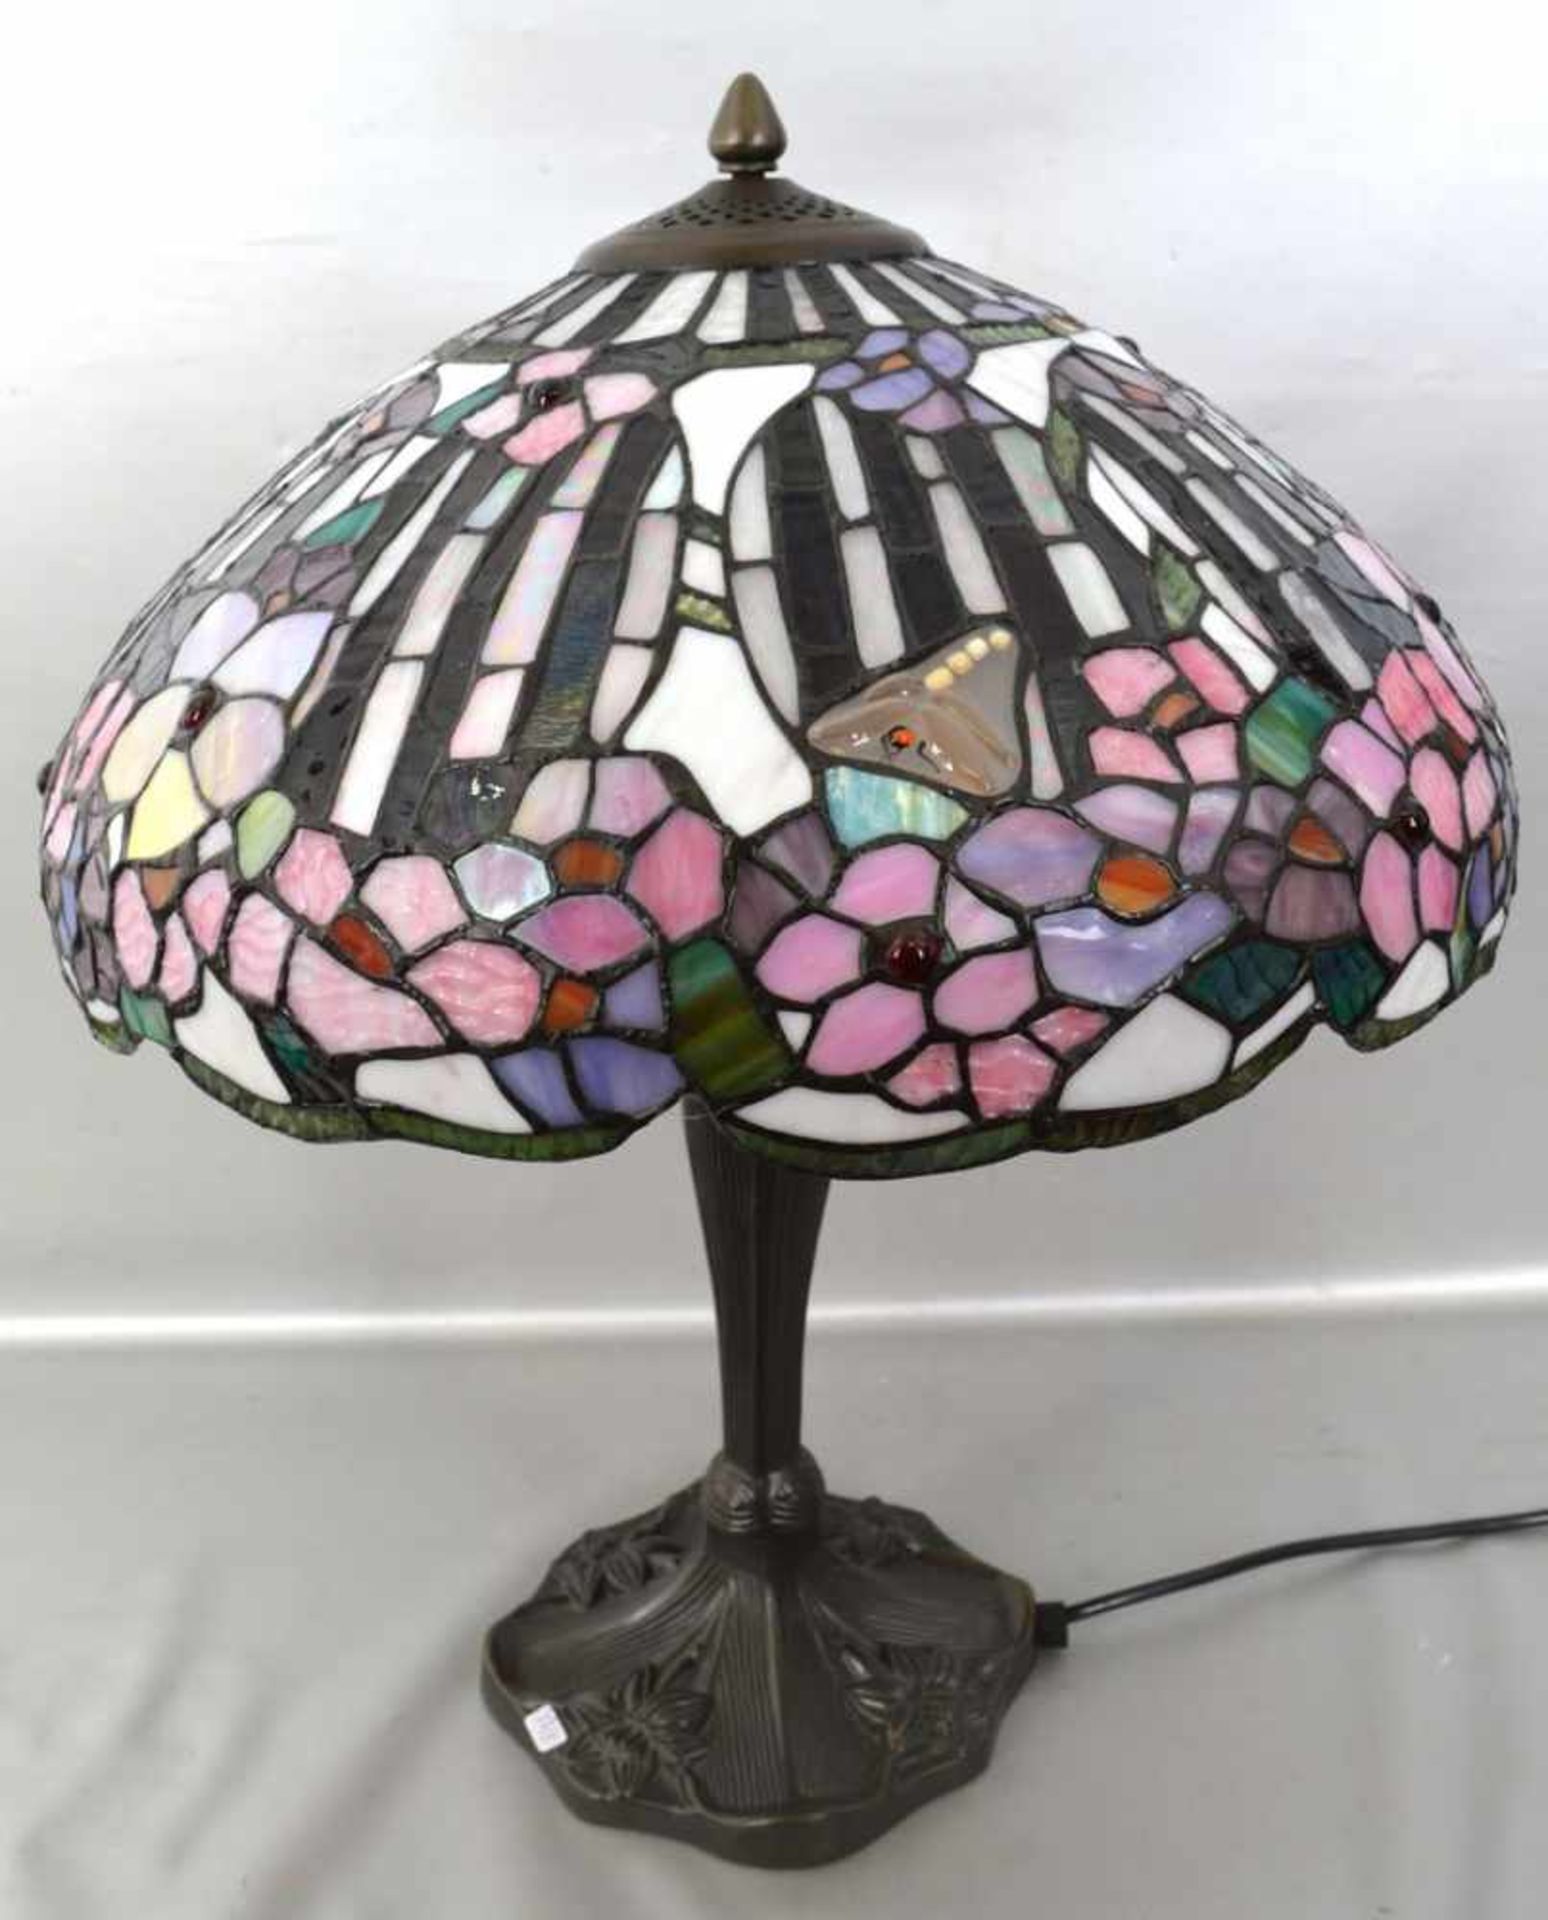 Tischlampe 2-lichtig, im Tiffany-Stil, Metallfuß, Schirm buntes Glas, H 55 cm, Dm 41 cm